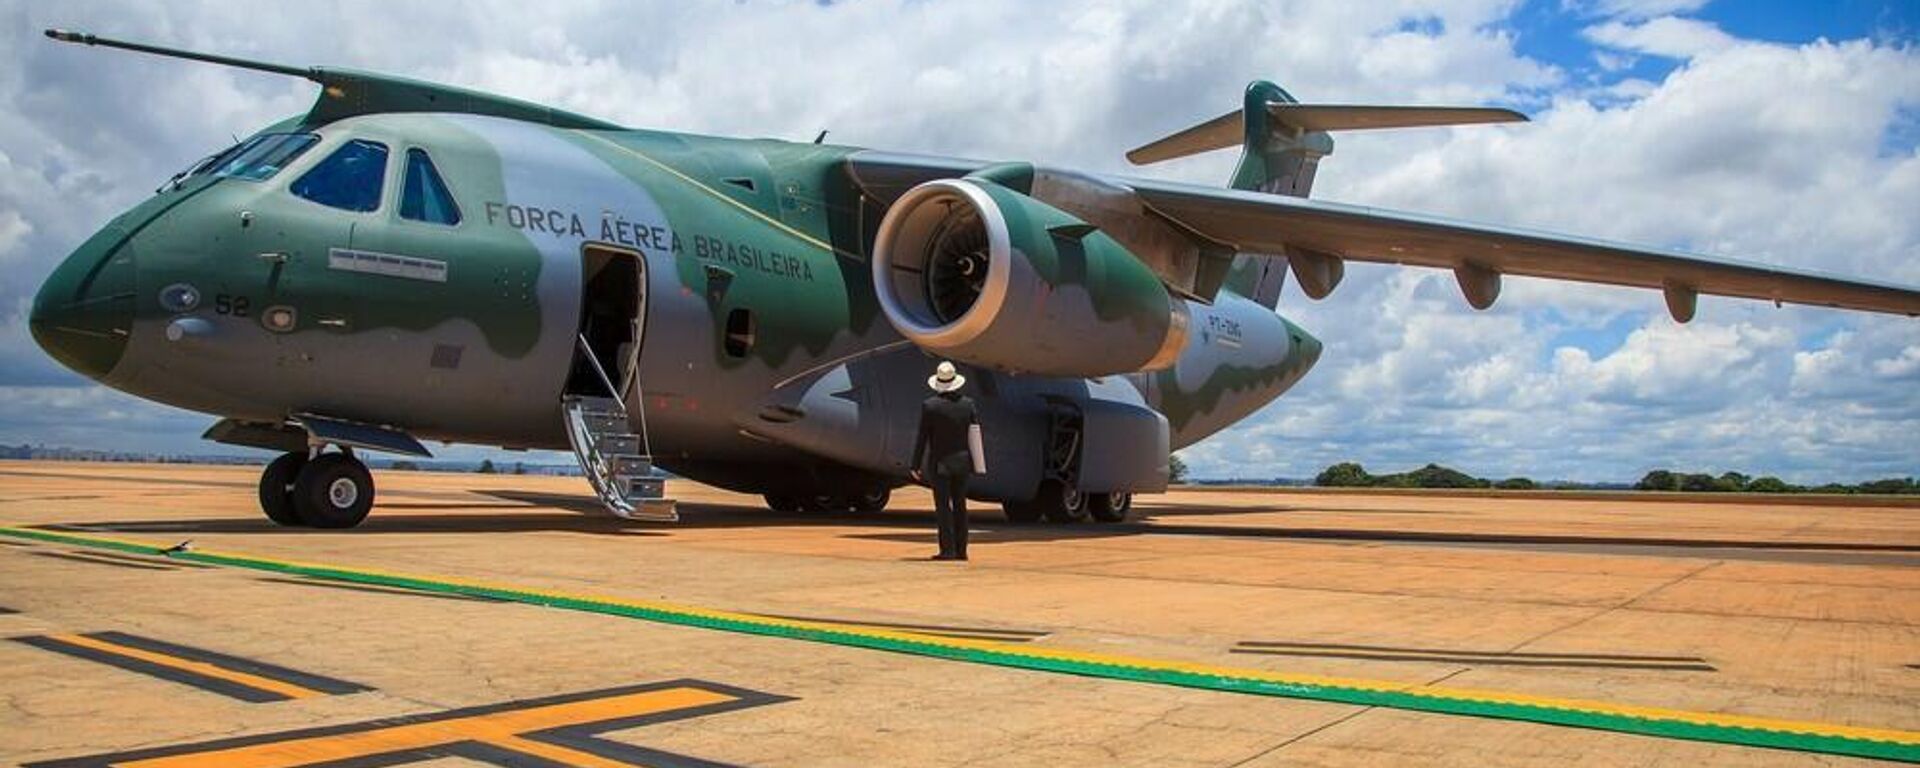 Modelo de avião KC-390 Millennium que poderá ser usado pela FAB para transporte de brasileiros que tentam deixar a Ucrânia - Sputnik Brasil, 1920, 12.04.2023